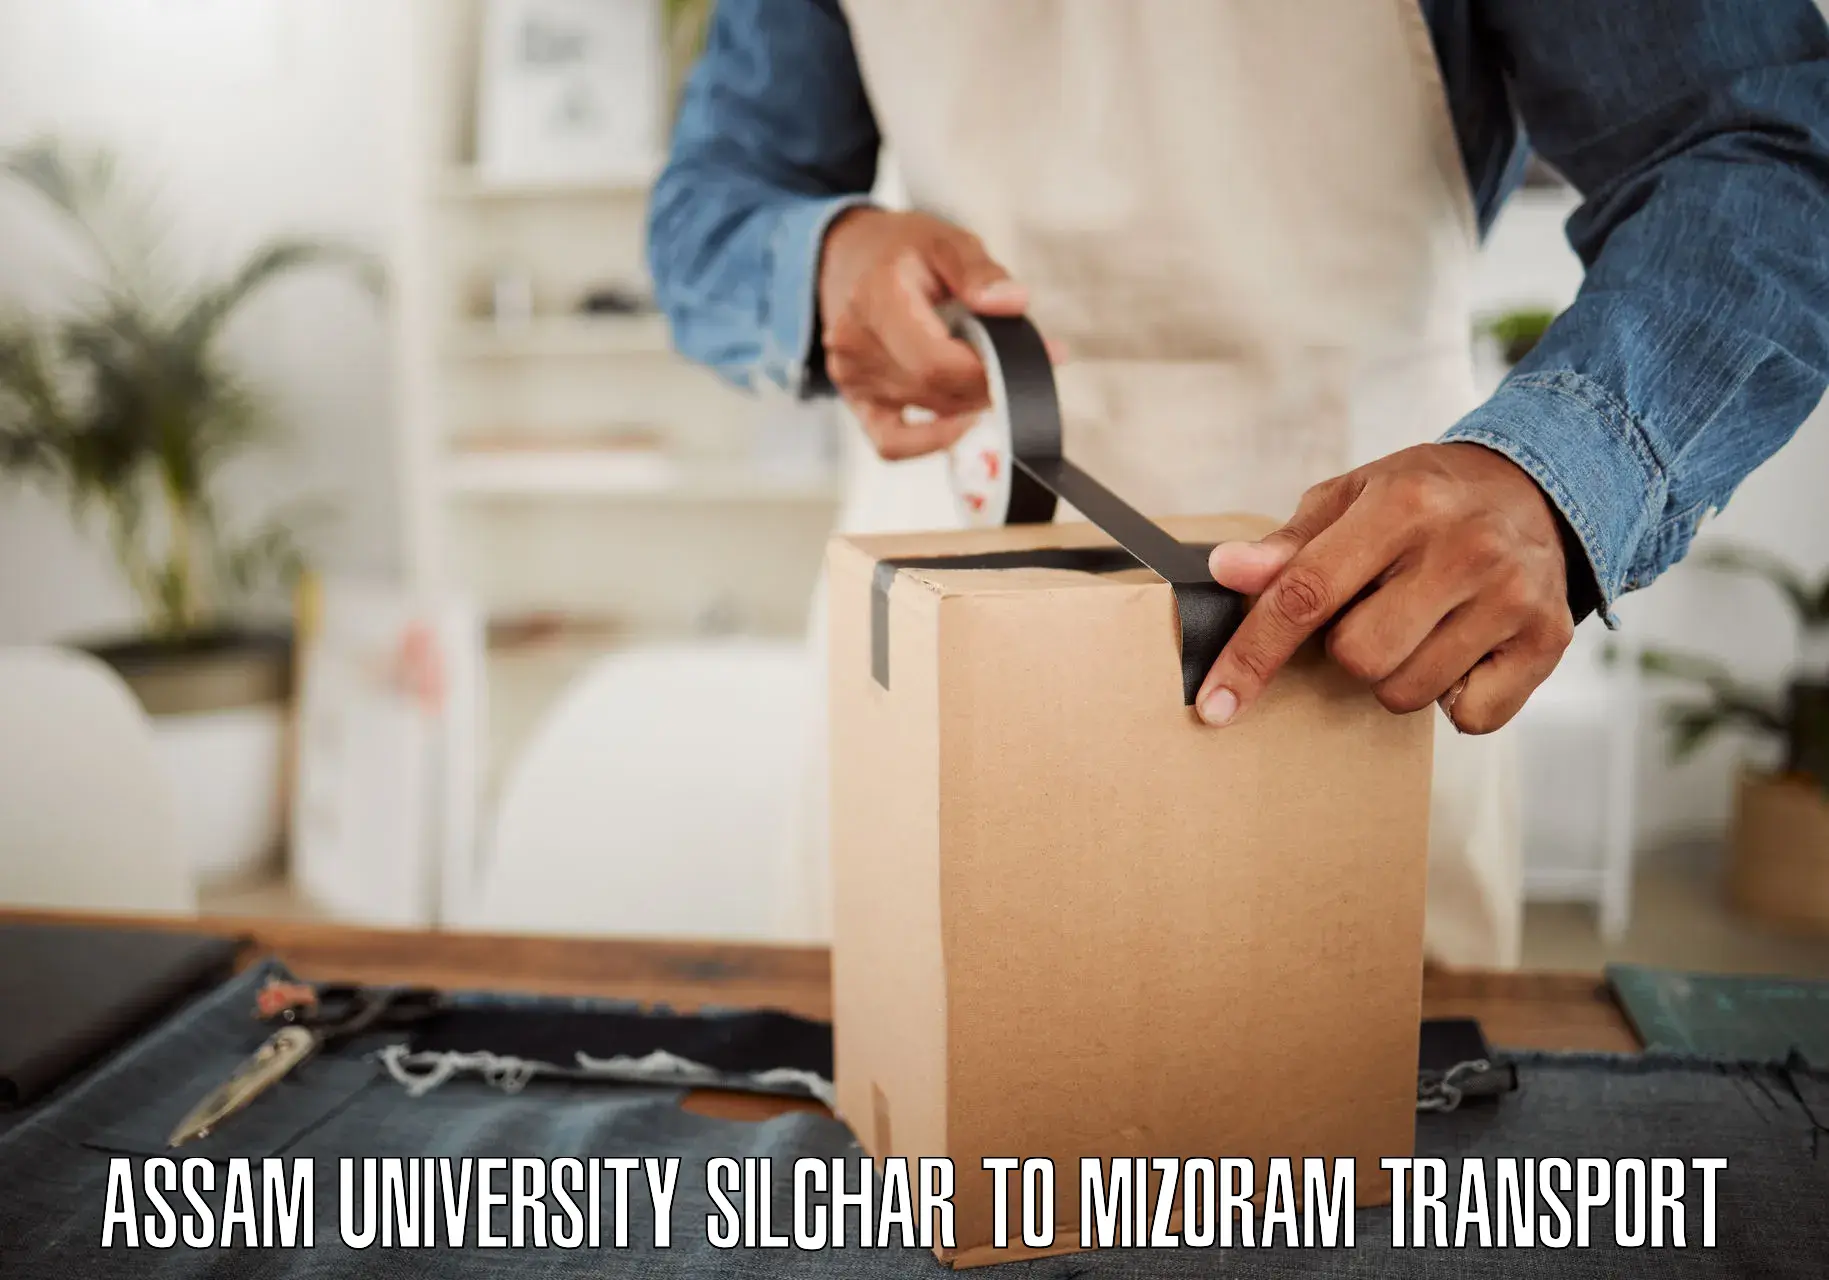 Delivery service Assam University Silchar to Mizoram